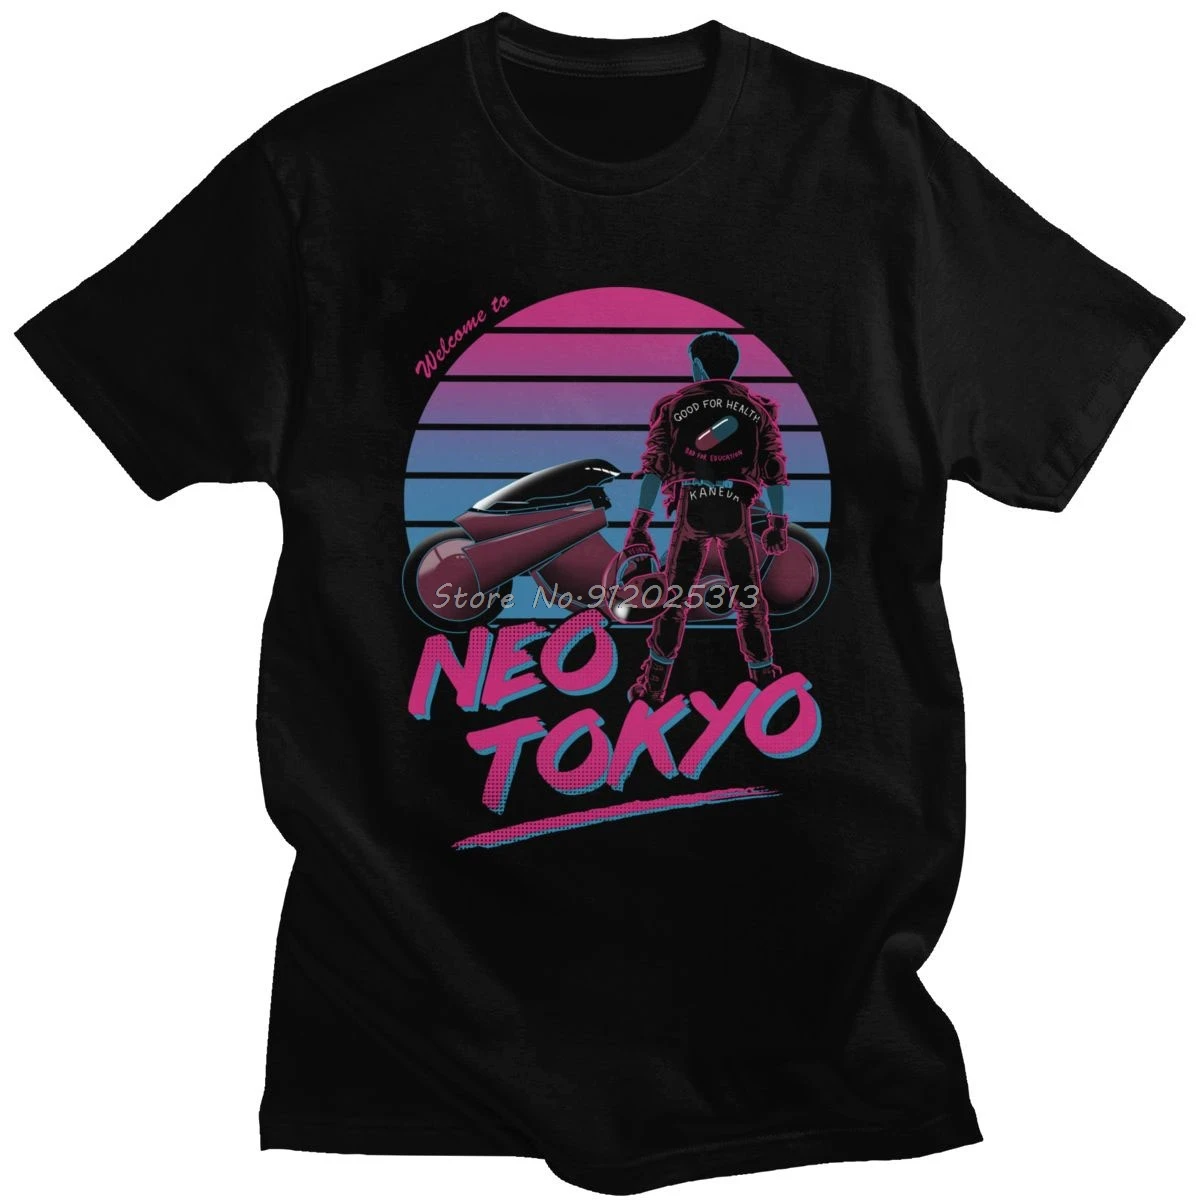 Добро пожаловать в Neo Tokyo, мужская футболка Akira Shotaro, футболка Kaneda Motorcycle, хлопковые футболки с коротким рукавом и круглым вырезом, футболка Vaporwave